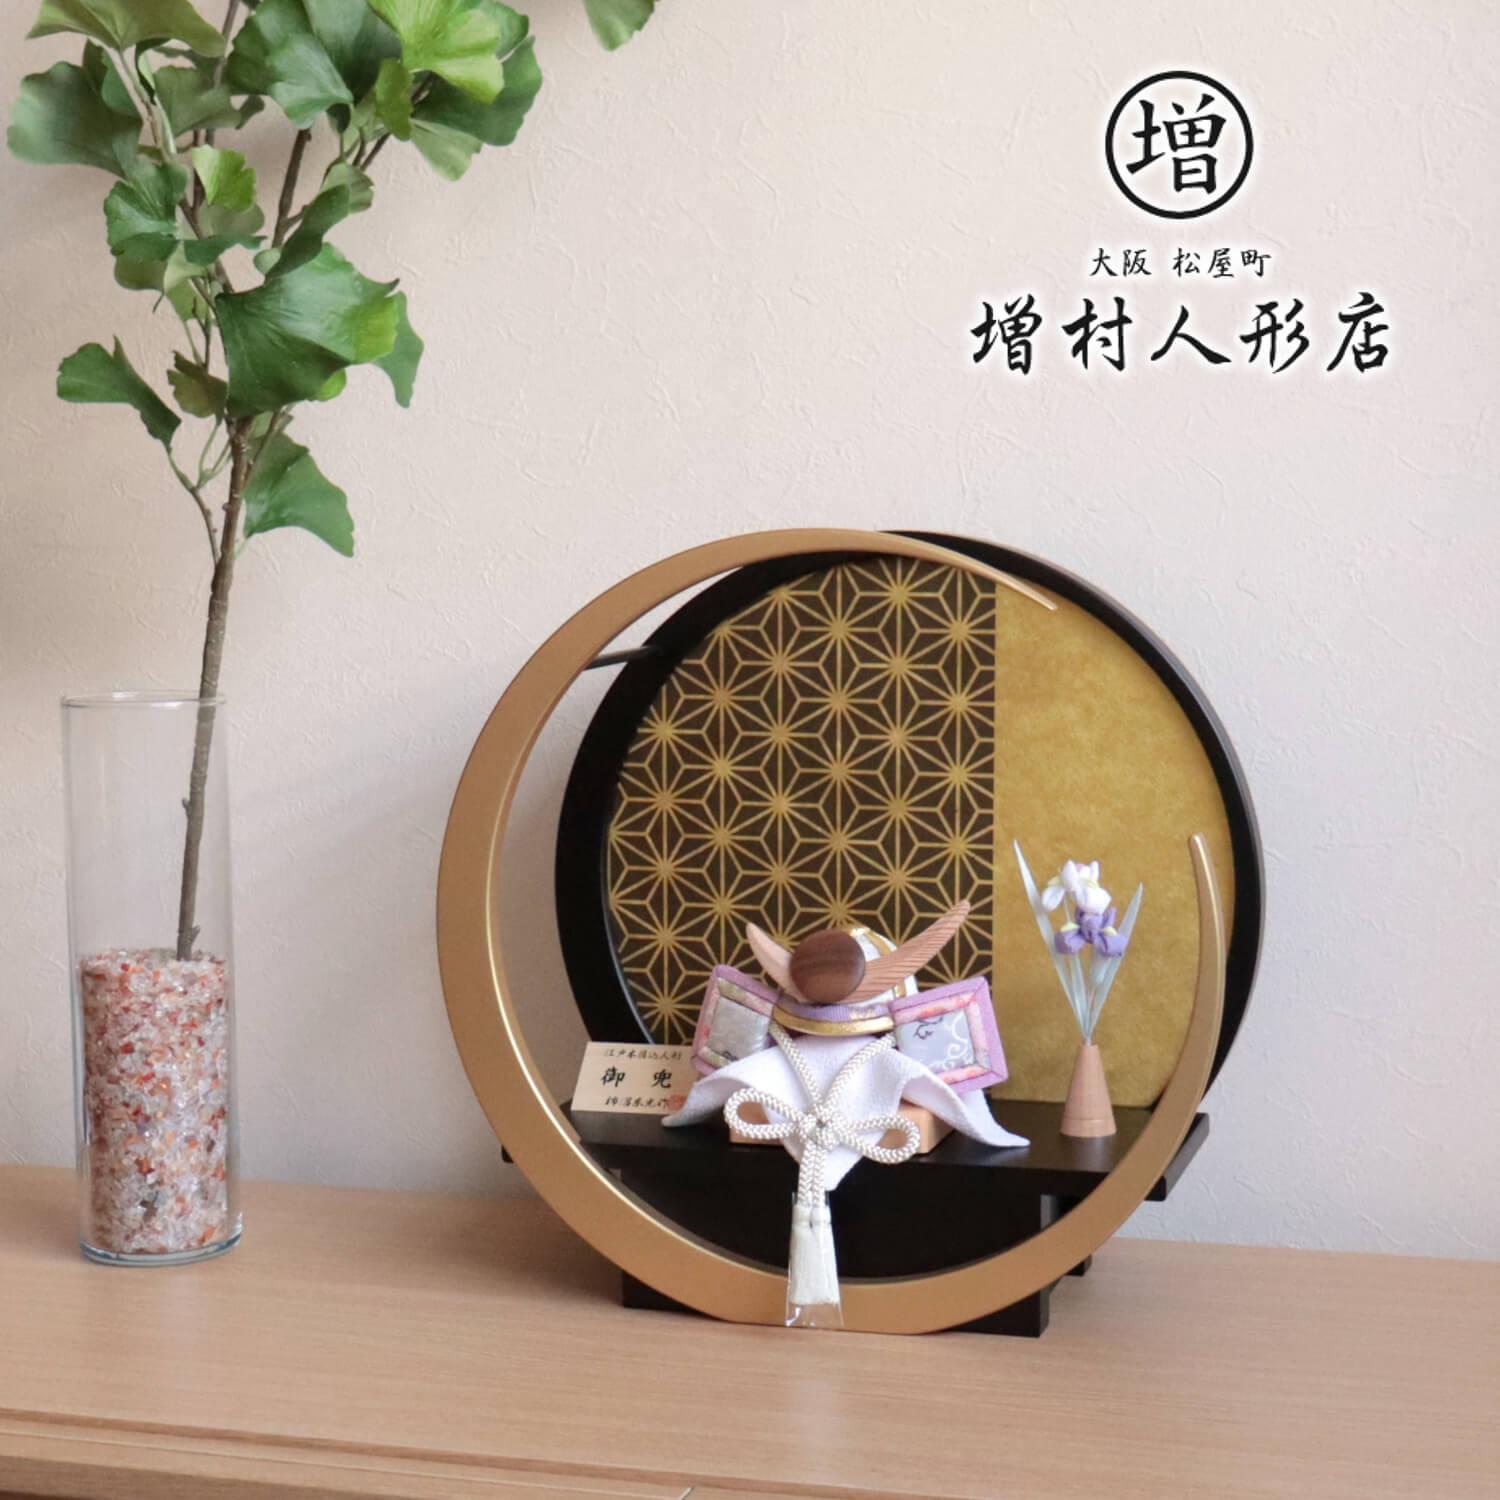 今年人気のブランド品や 伝統工芸士 柿沼東光作 月-tsuki- 円形